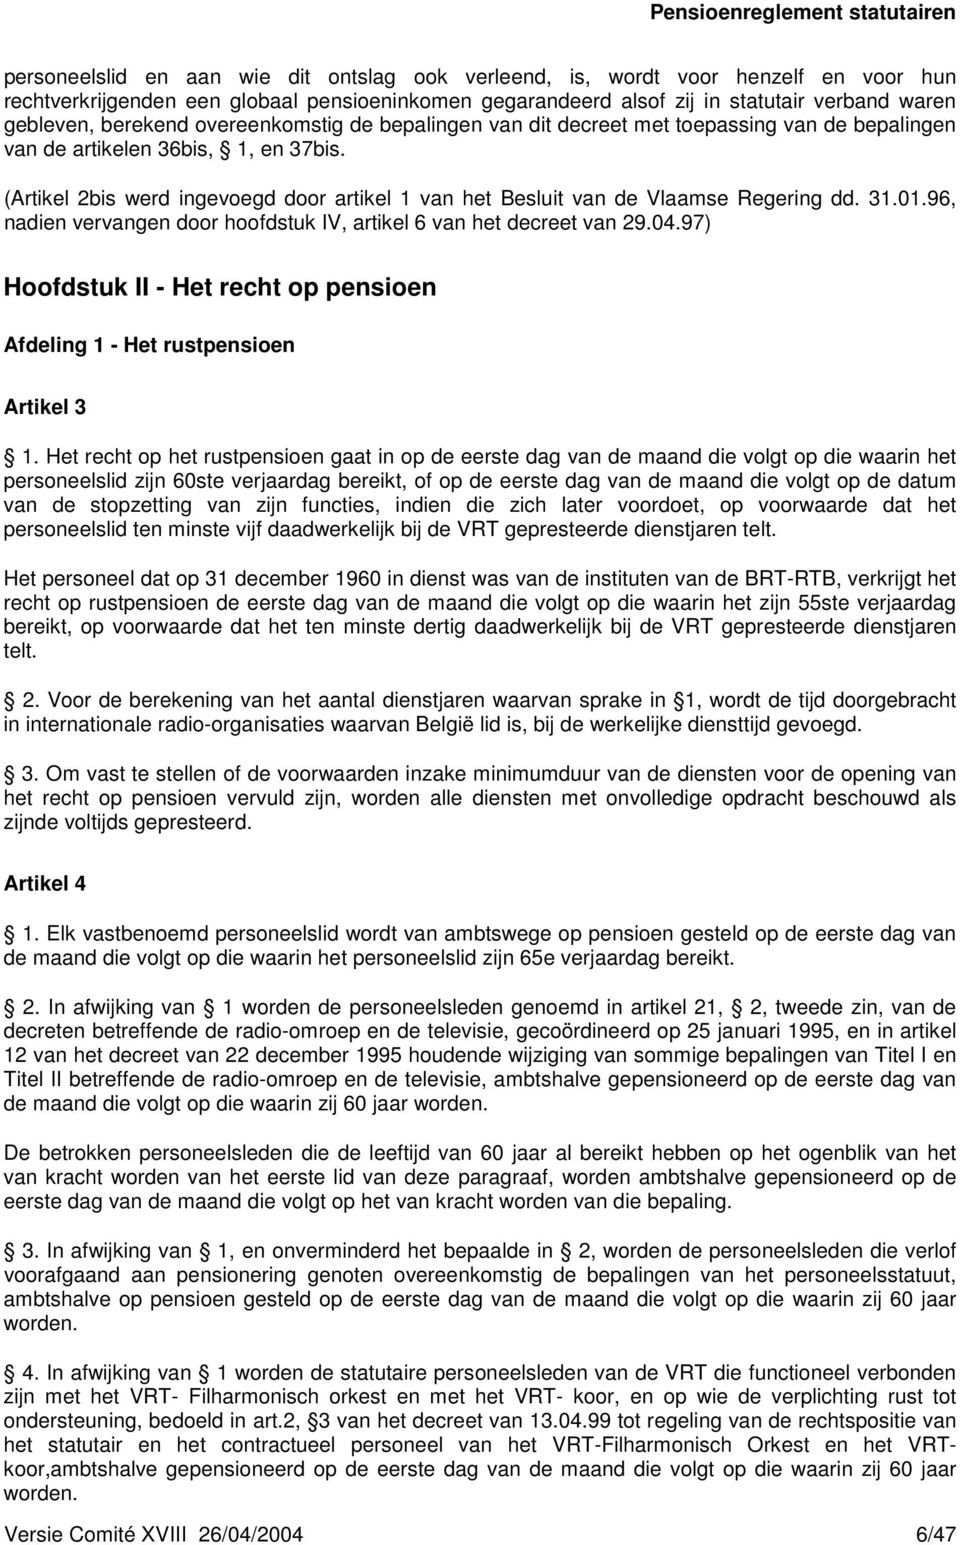 (Artikel 2bis werd ingevoegd door artikel 1 van het Besluit van de Vlaamse Regering dd. 31.01.96, nadien vervangen door hoofdstuk IV, artikel 6 van het decreet van 29.04.